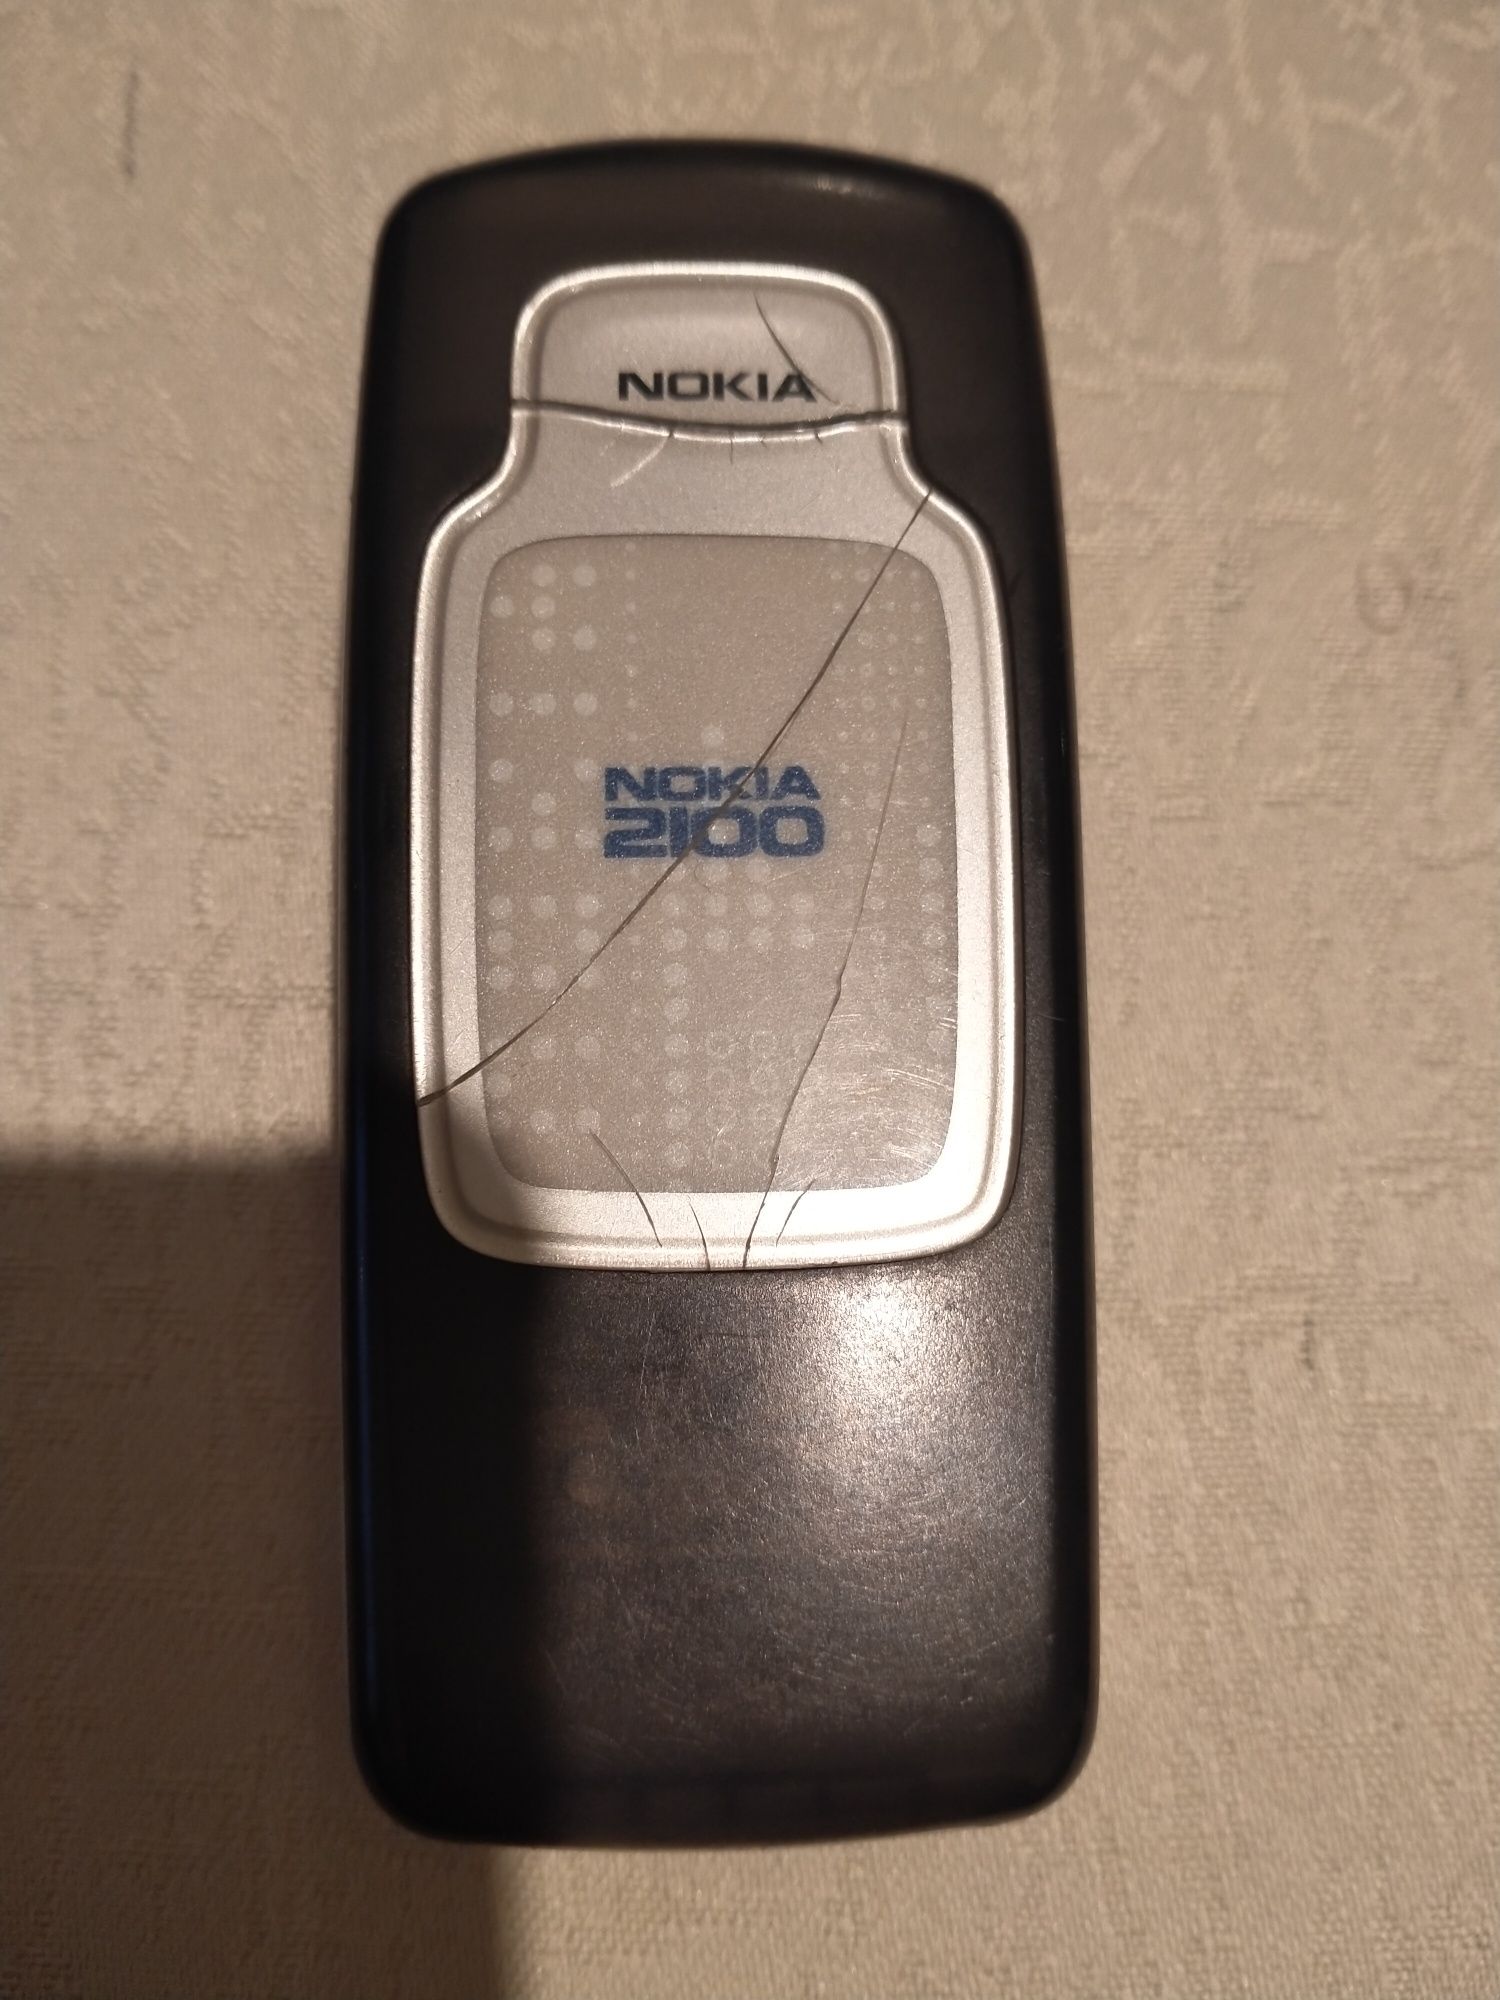 Nokia 2100     .